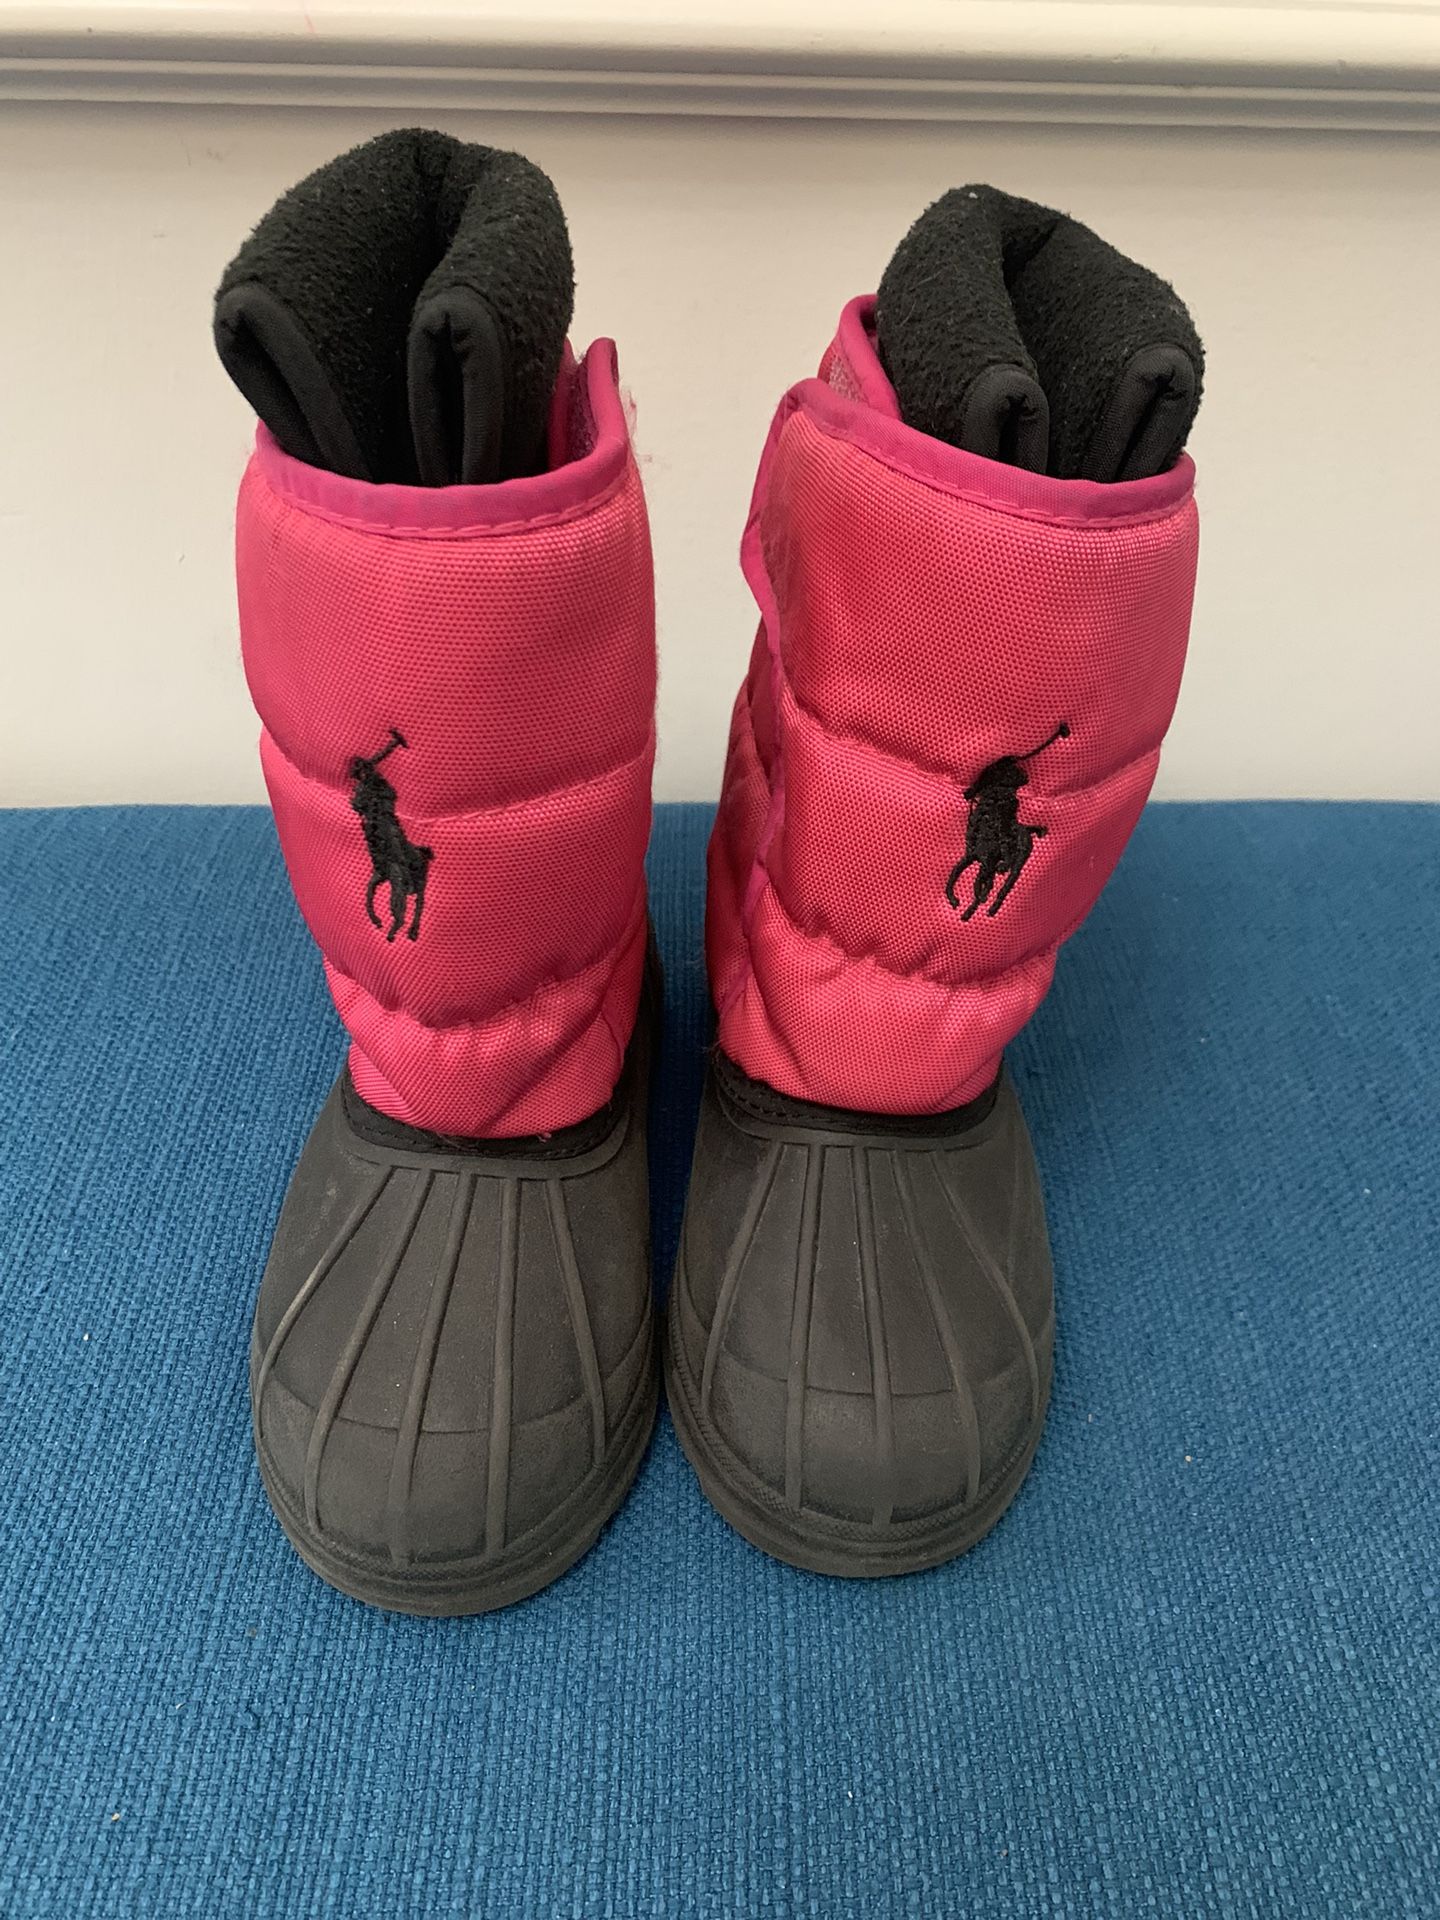 Girl polo boots